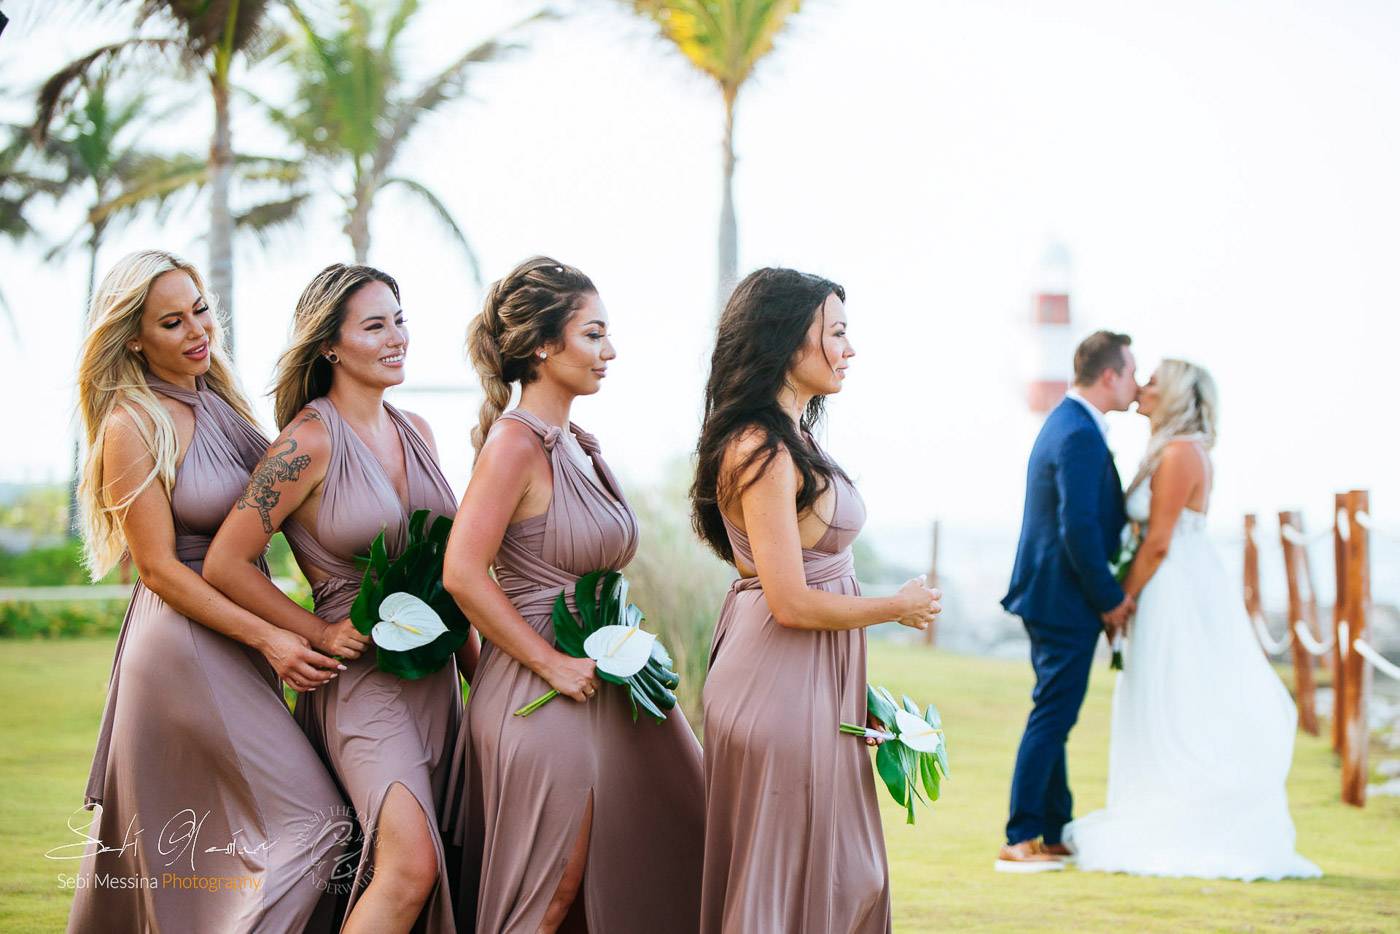 Bridesmaids Groomsmen kidding at a destination wedding in Cancun Mexico – Sebi Messina Photography